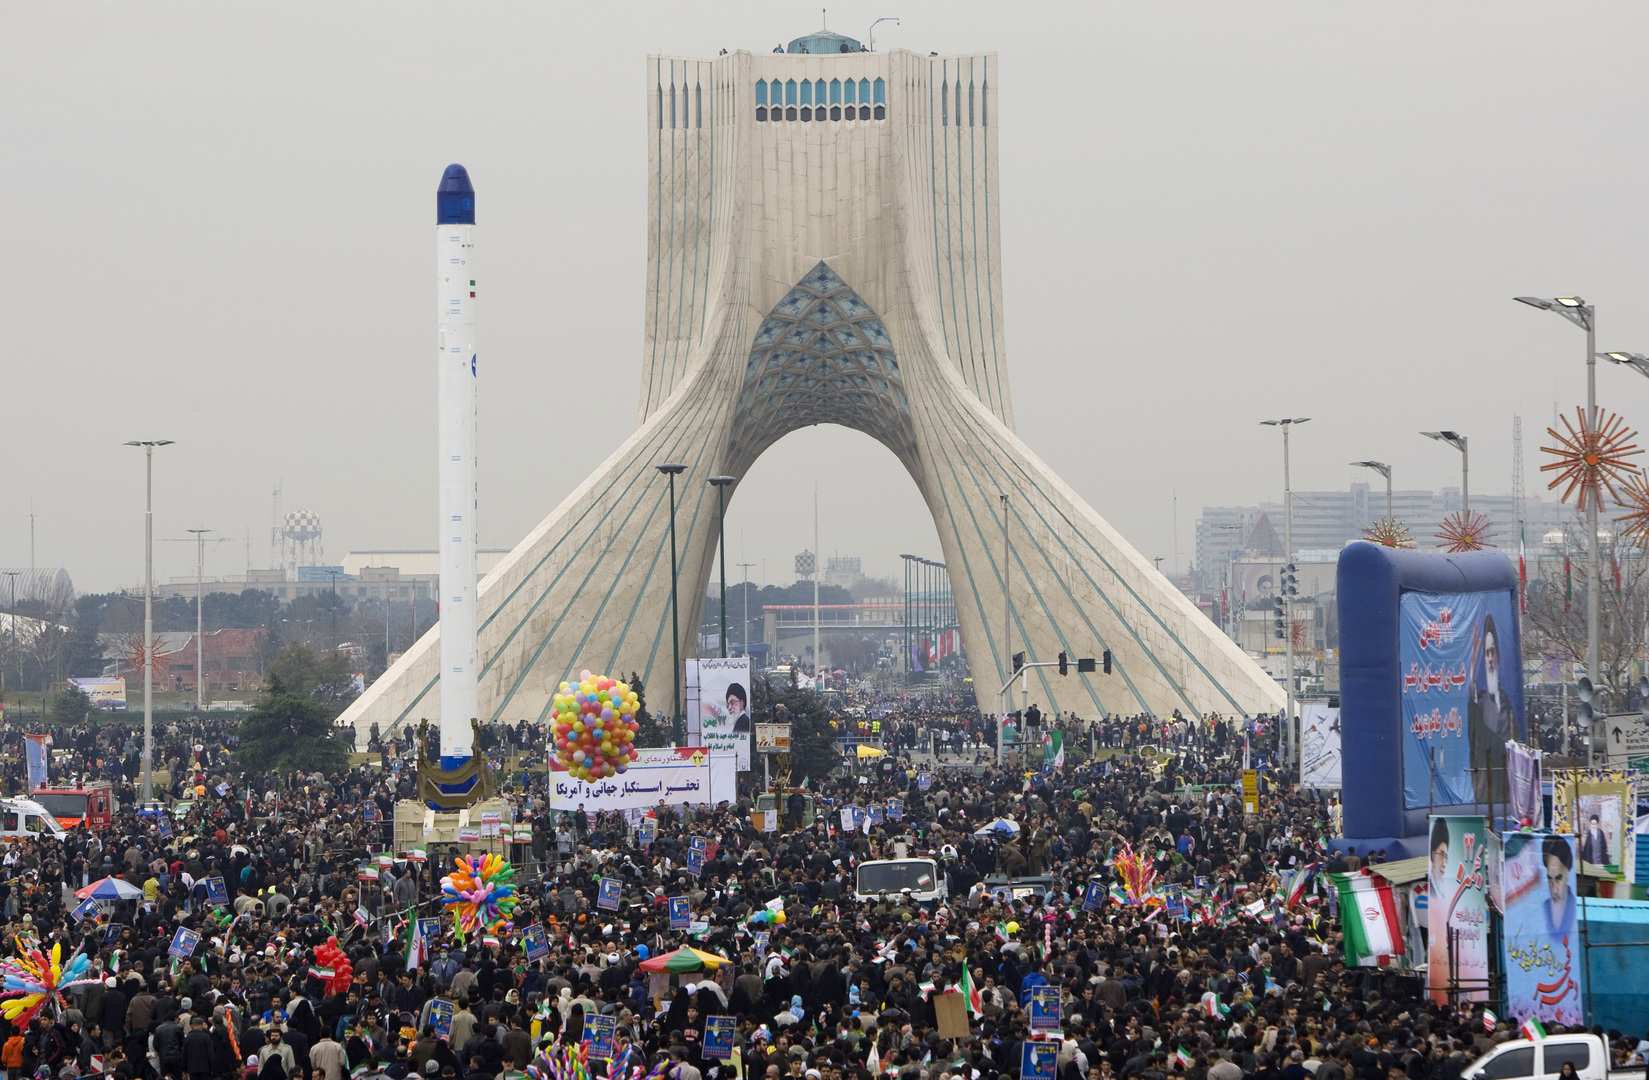 الخارجية الإيرانية: في حال ثبت ضلوع كيان أو دولة في حادث نطنز ستتخذ إيران ردا حاسما